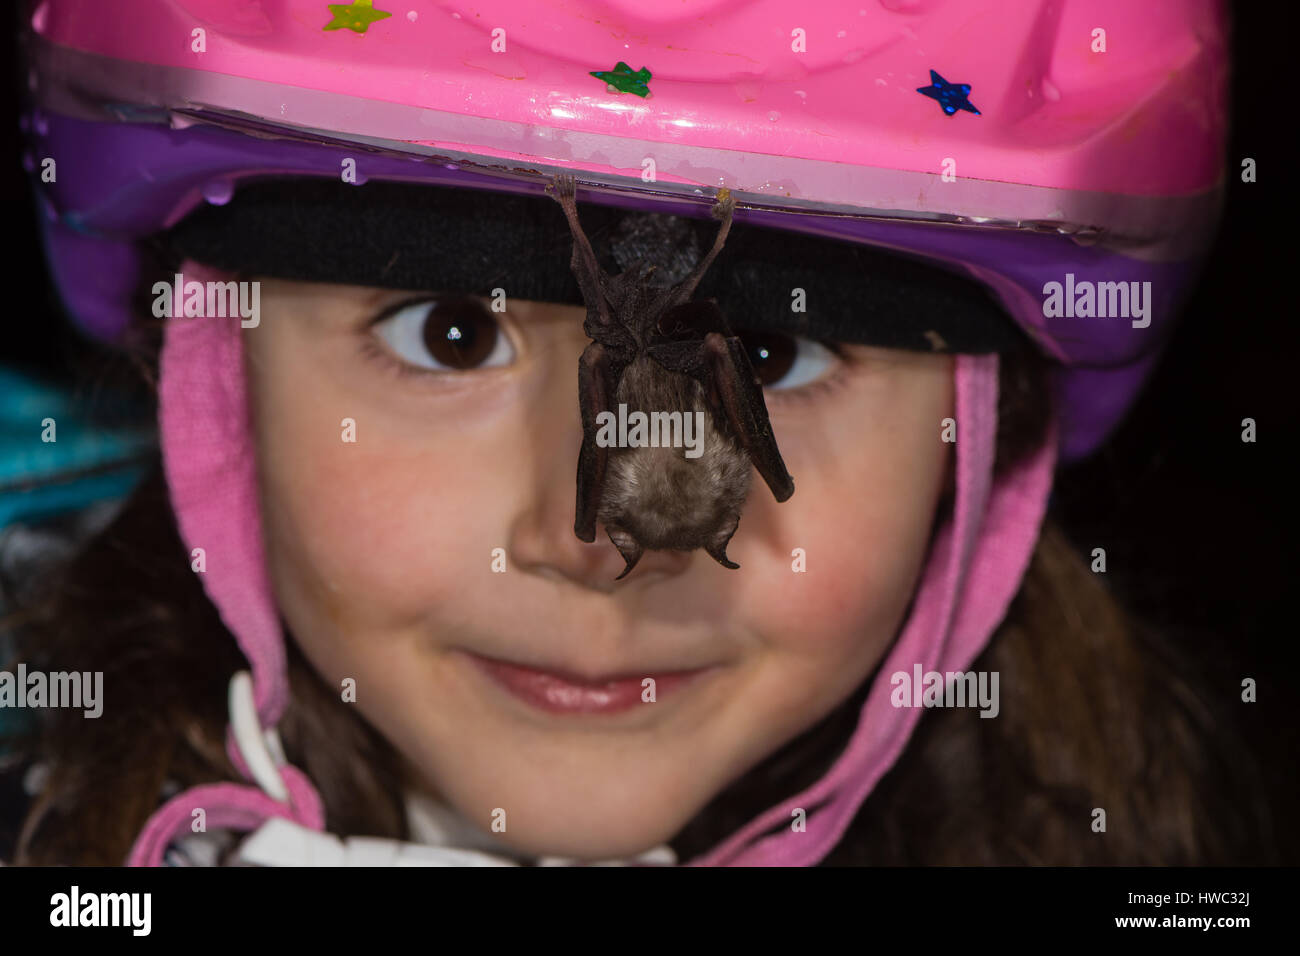 Schielende Kind Fledermaus hängen vom Helm zu betrachten. Freundlichen weniger Hufeisennase ruht auf Mädchen Fahrradhelm in einer Höhle in Somerset, Großbritannien Stockfoto